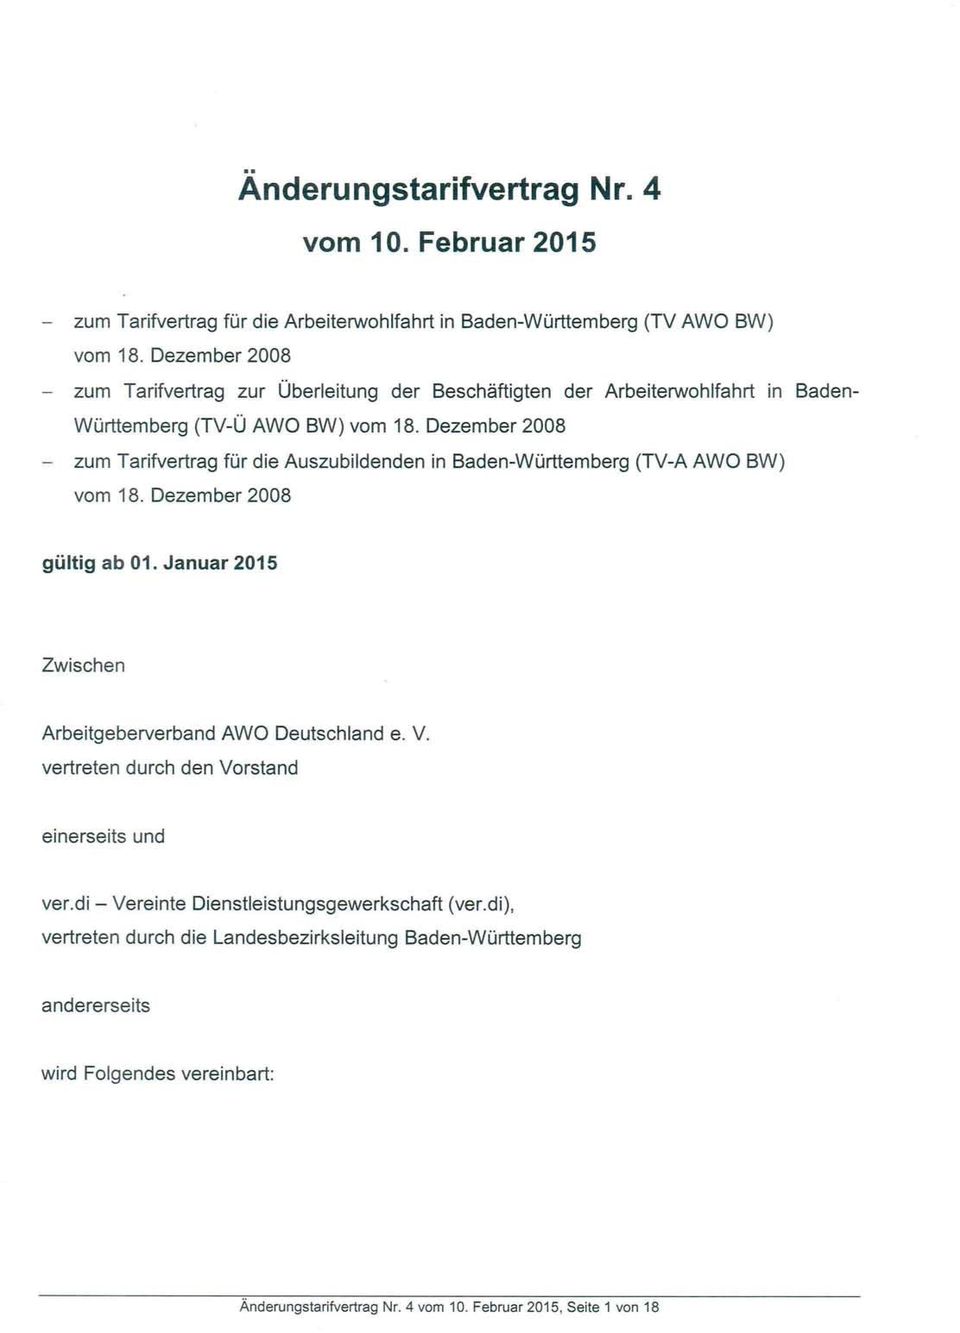 Dezember 2008 - zum Tarifvertrag für die Auszubildenden in Baden-Württemberg (TV-A AWO BW) vom 18. Dezember 2008 gültig ab 01.